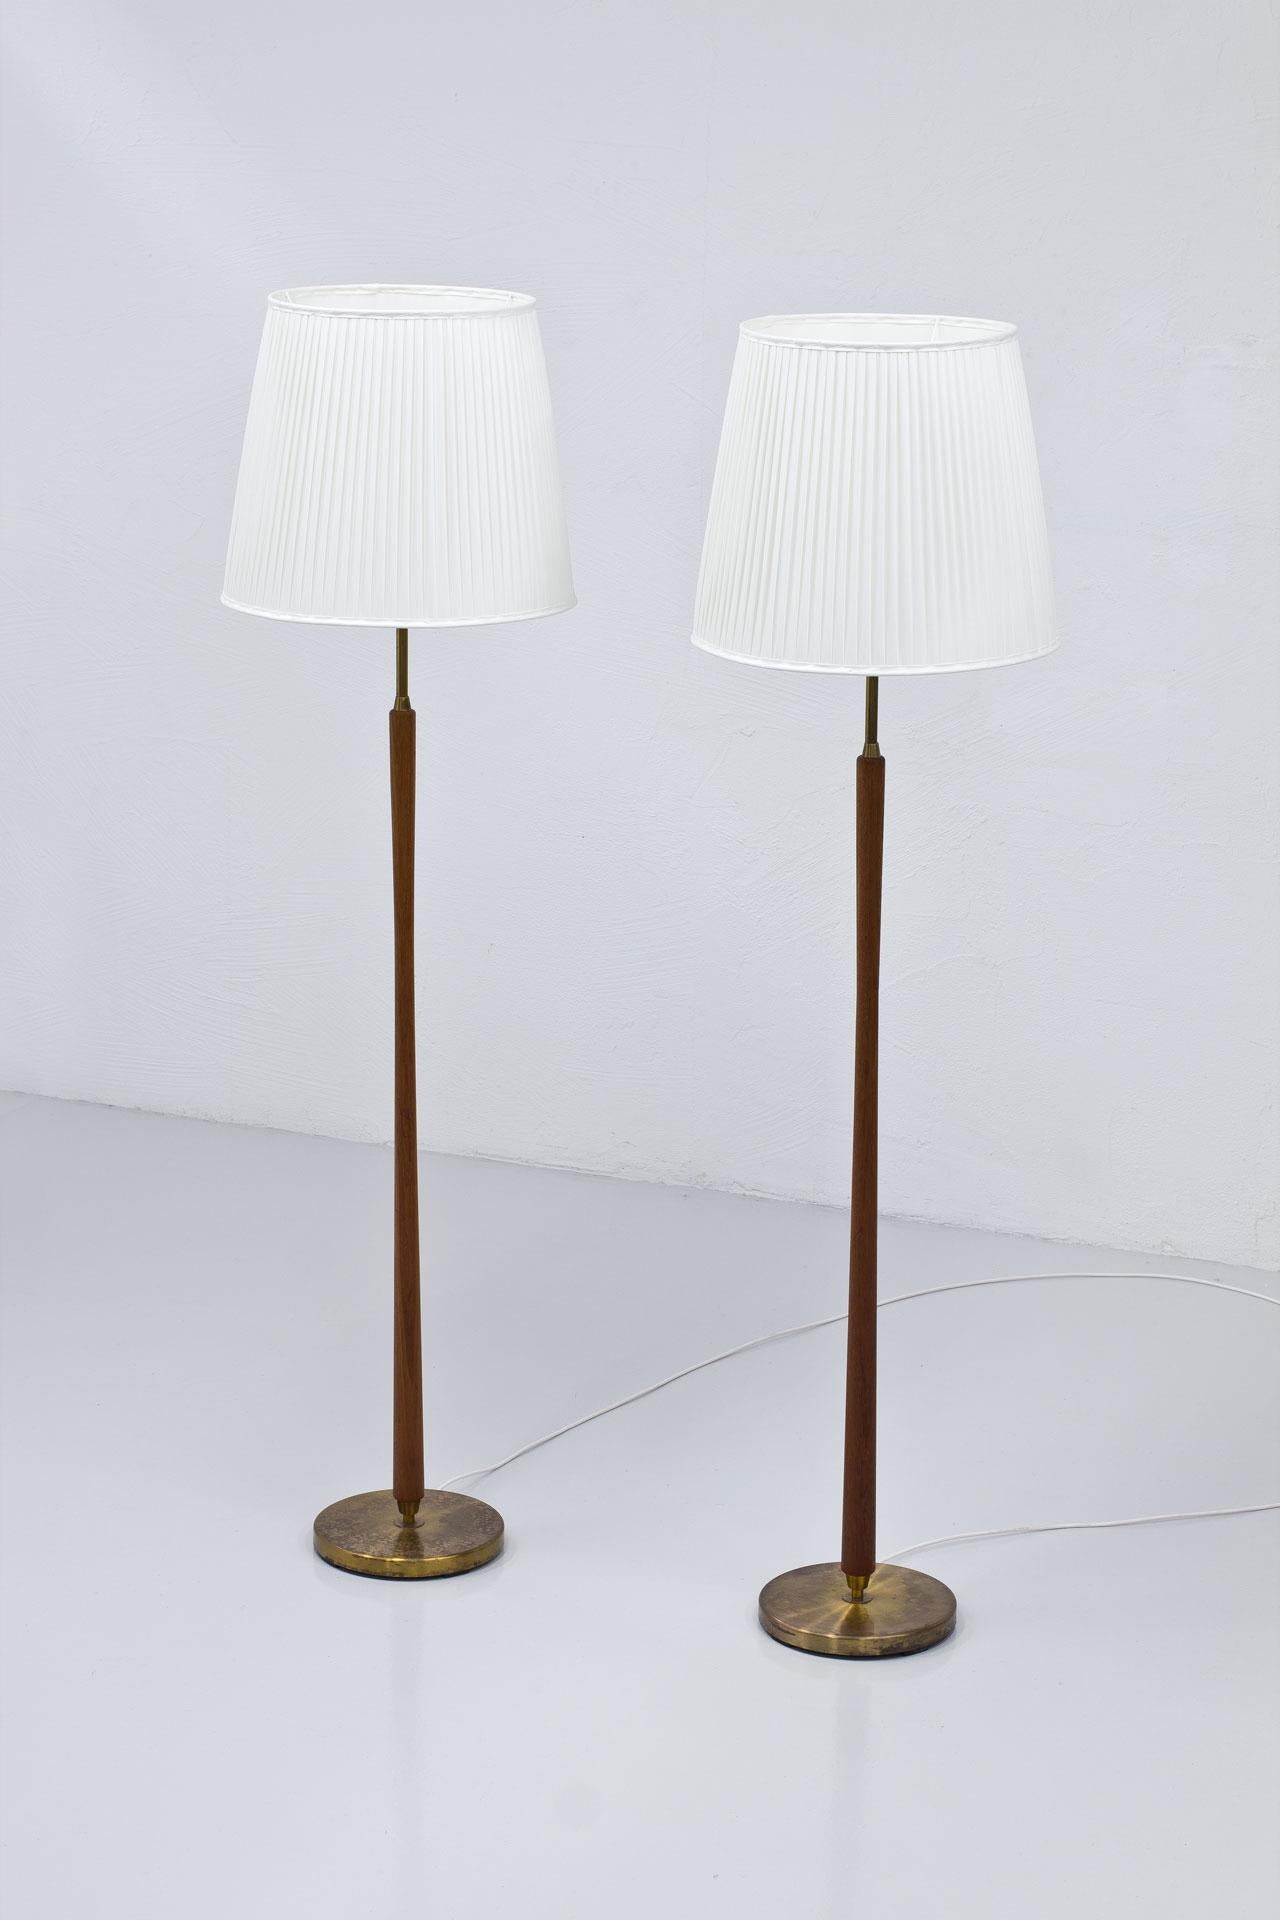 Swedish Pair of Scandinavian Modern Floor Lamps by ASEA, Sweden